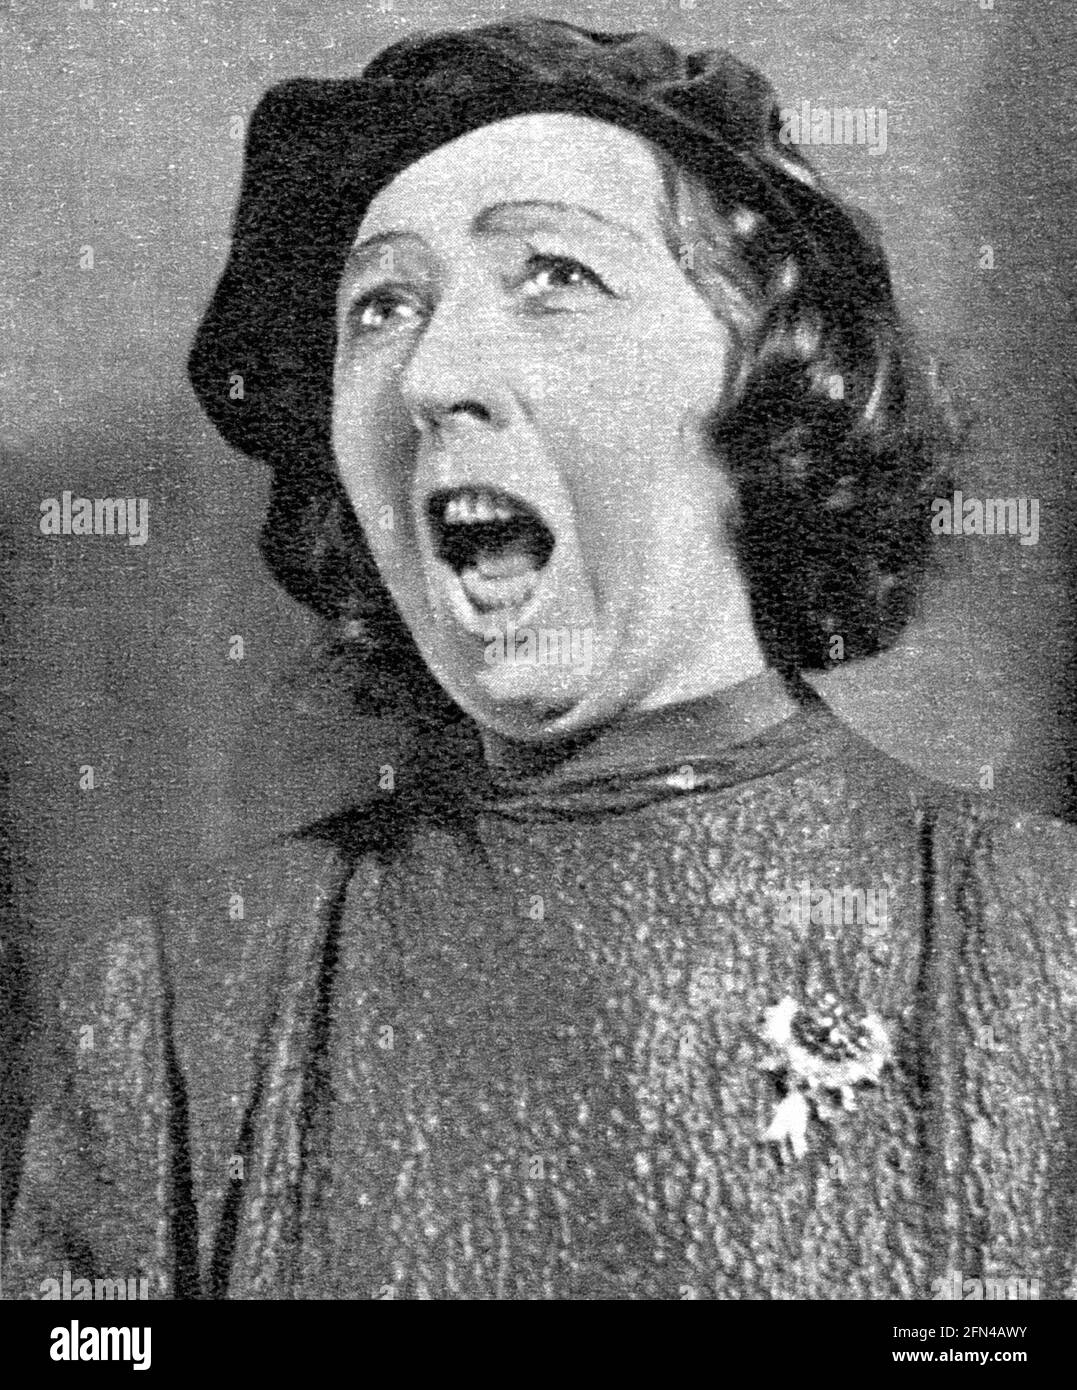 Waldoff, Claire, 21.10.1884 - 22.1.1957, artiste de cabaret allemand, portrait, ANNÉES 1930, INFO-AUTORISATION-DROITS-SUPPLÉMENTAIRES-NON-DISPONIBLE Banque D'Images